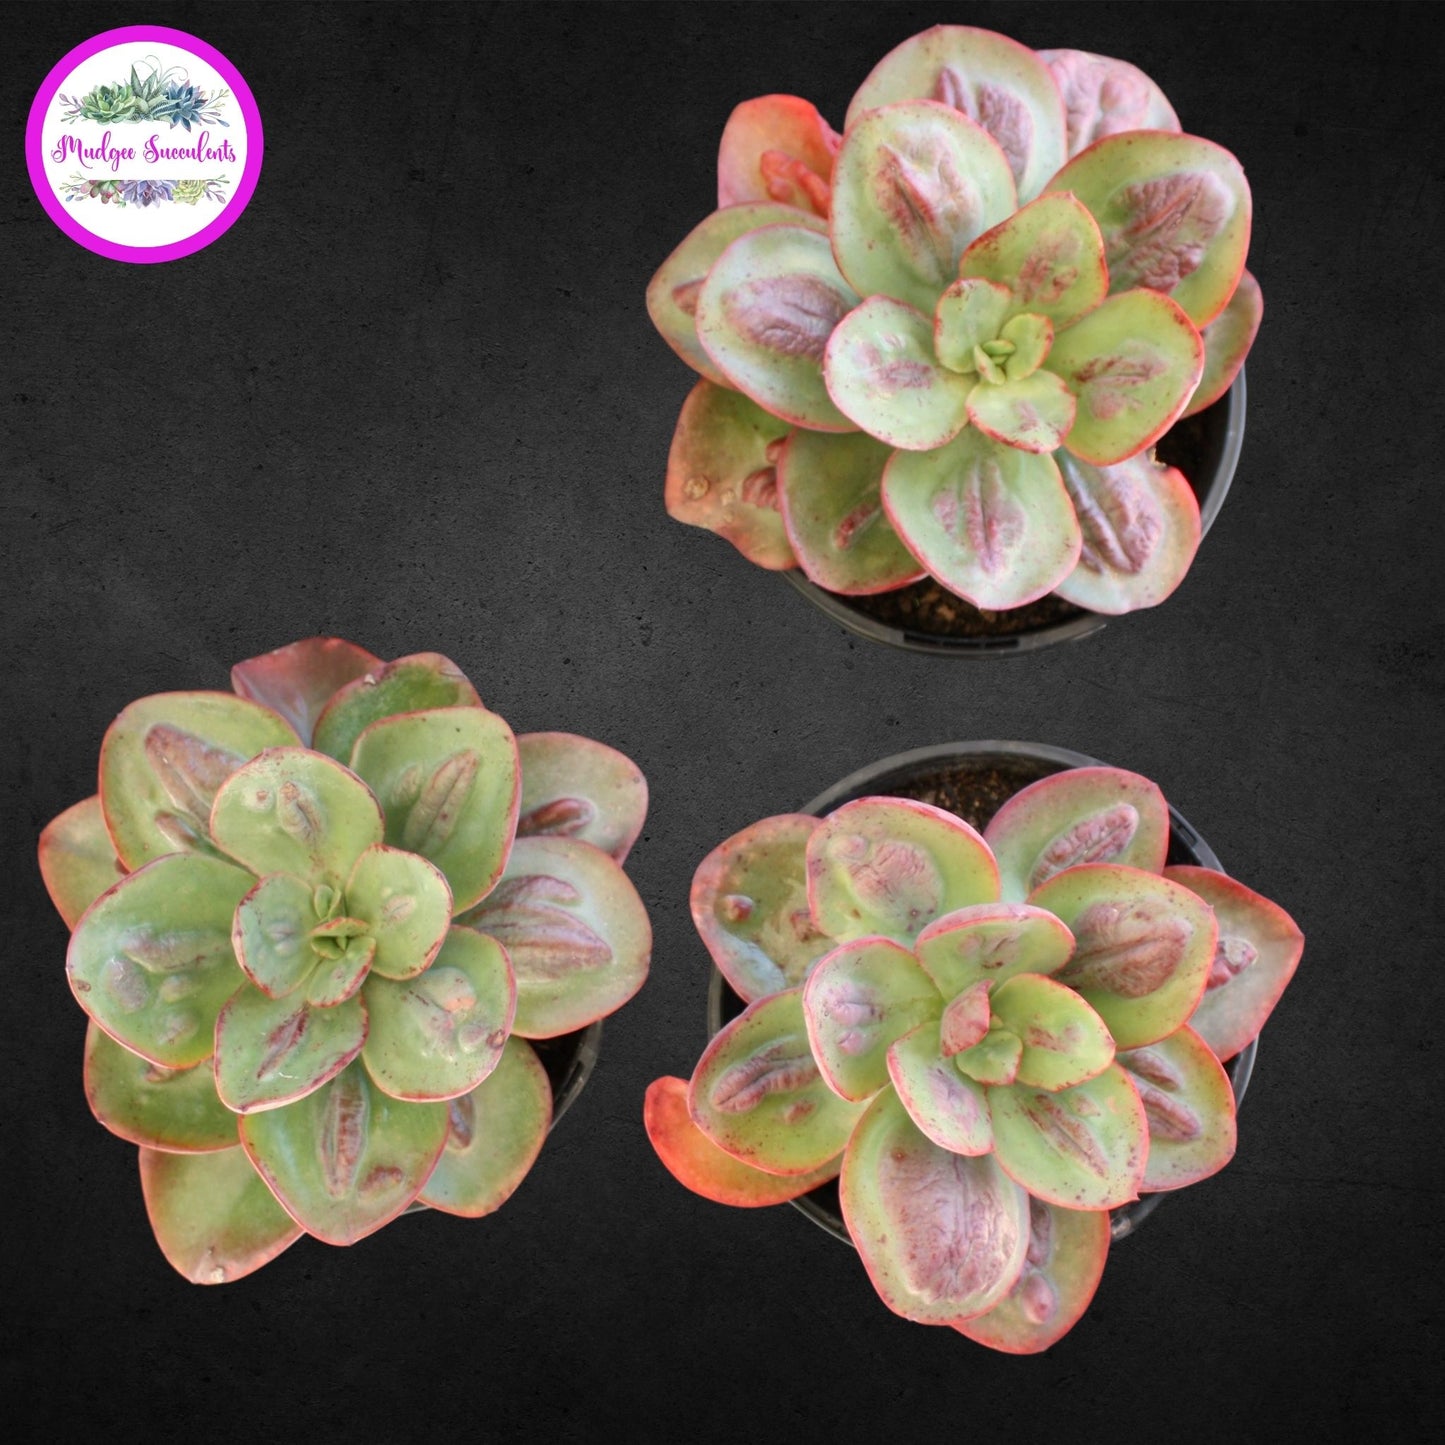 Succulent Plant - Echeveria 'Baron Bold' - Mudgee Succulents Online Shop